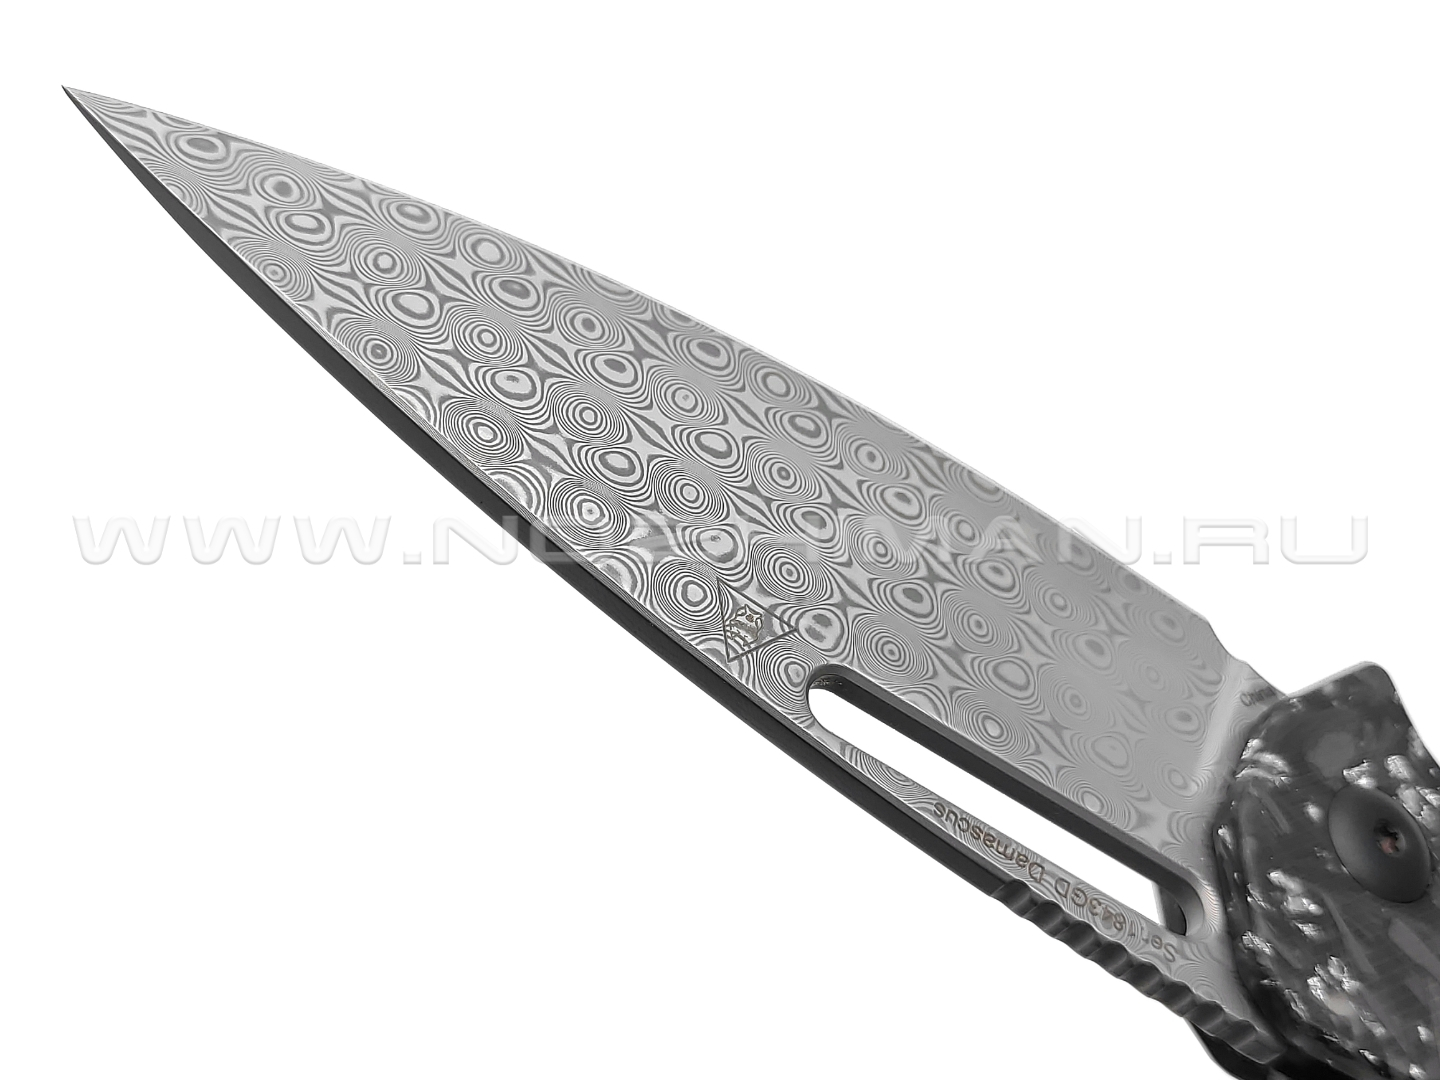 Нож Artisan Cutlery 1843GD-SCF Arion сталь Damasteel, рукоять Aluminum, Carbon fiber